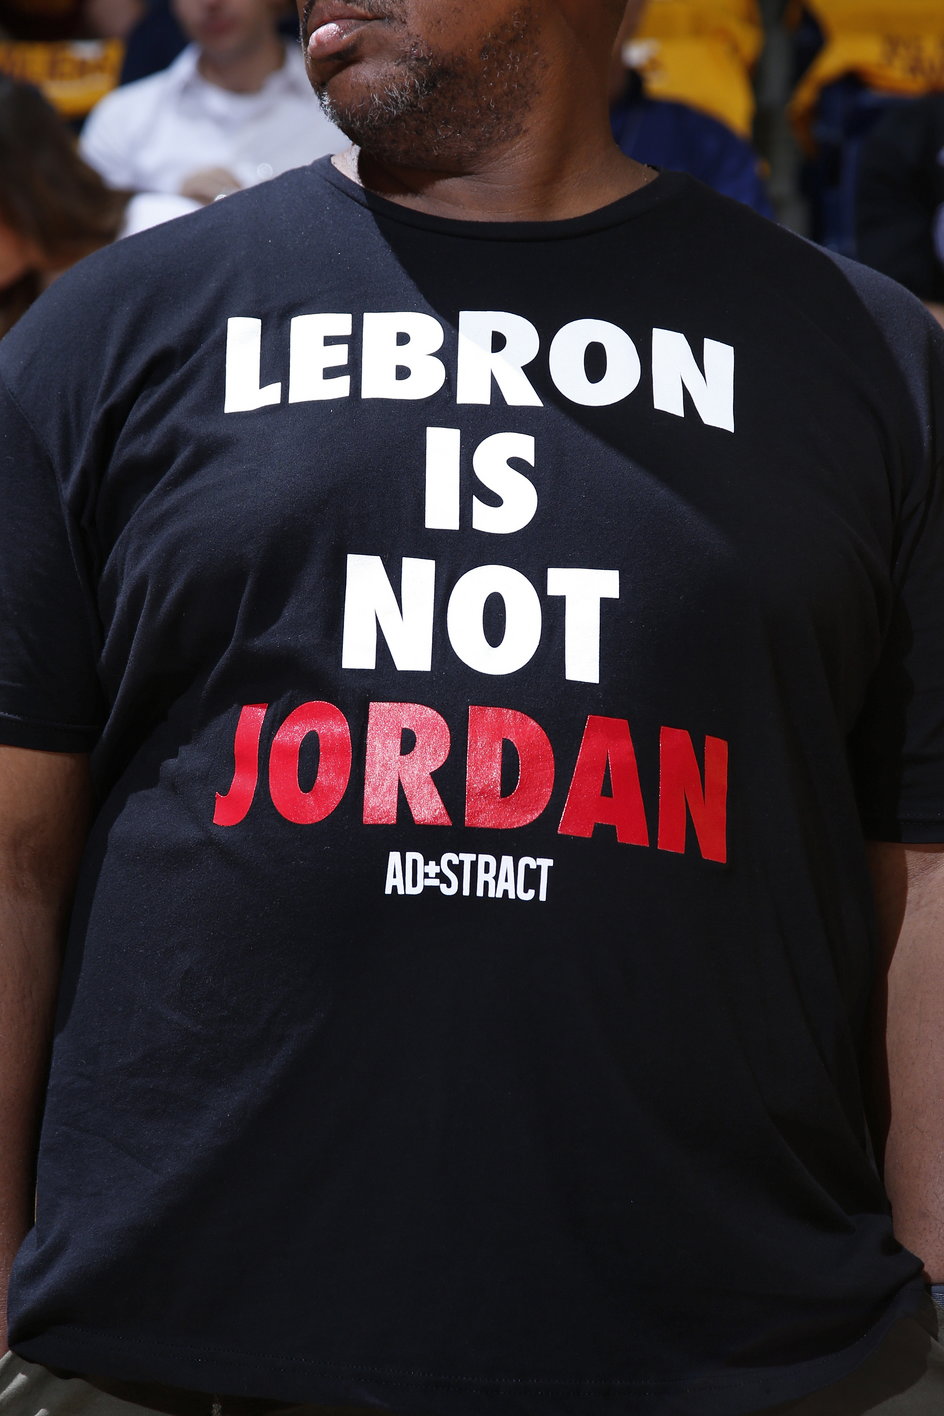 LeBron James nie jest Michaelem Jordanem - porównaniom obu wybitnych koszykarzy nie ma końca